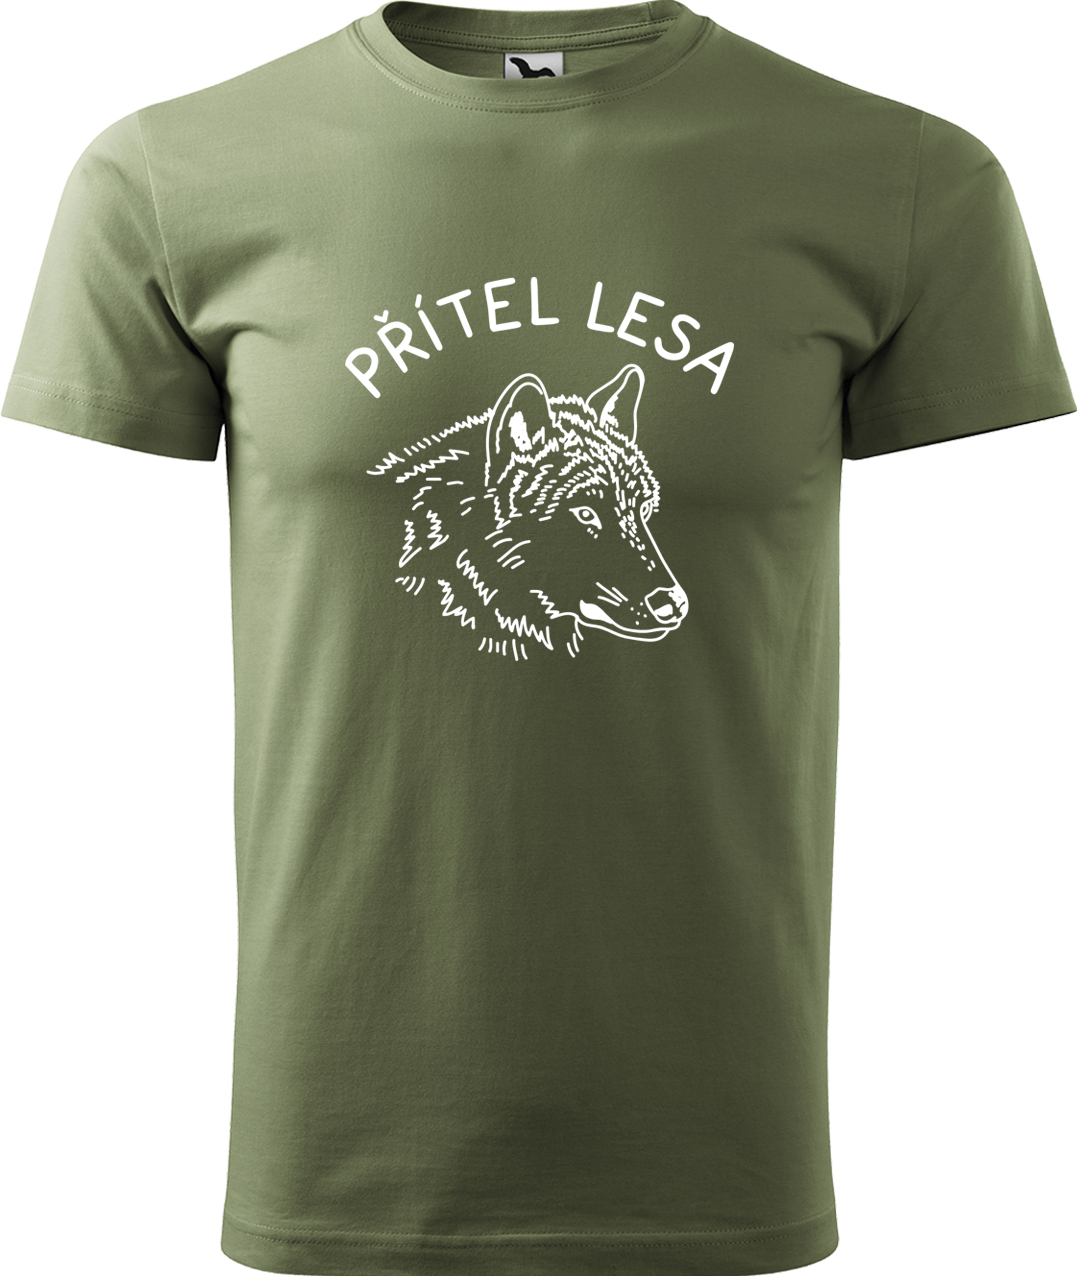 Pánské tričko s vlkem - Přítel lesa Velikost: 4XL, Barva: Světlá khaki (28), Střih: pánský